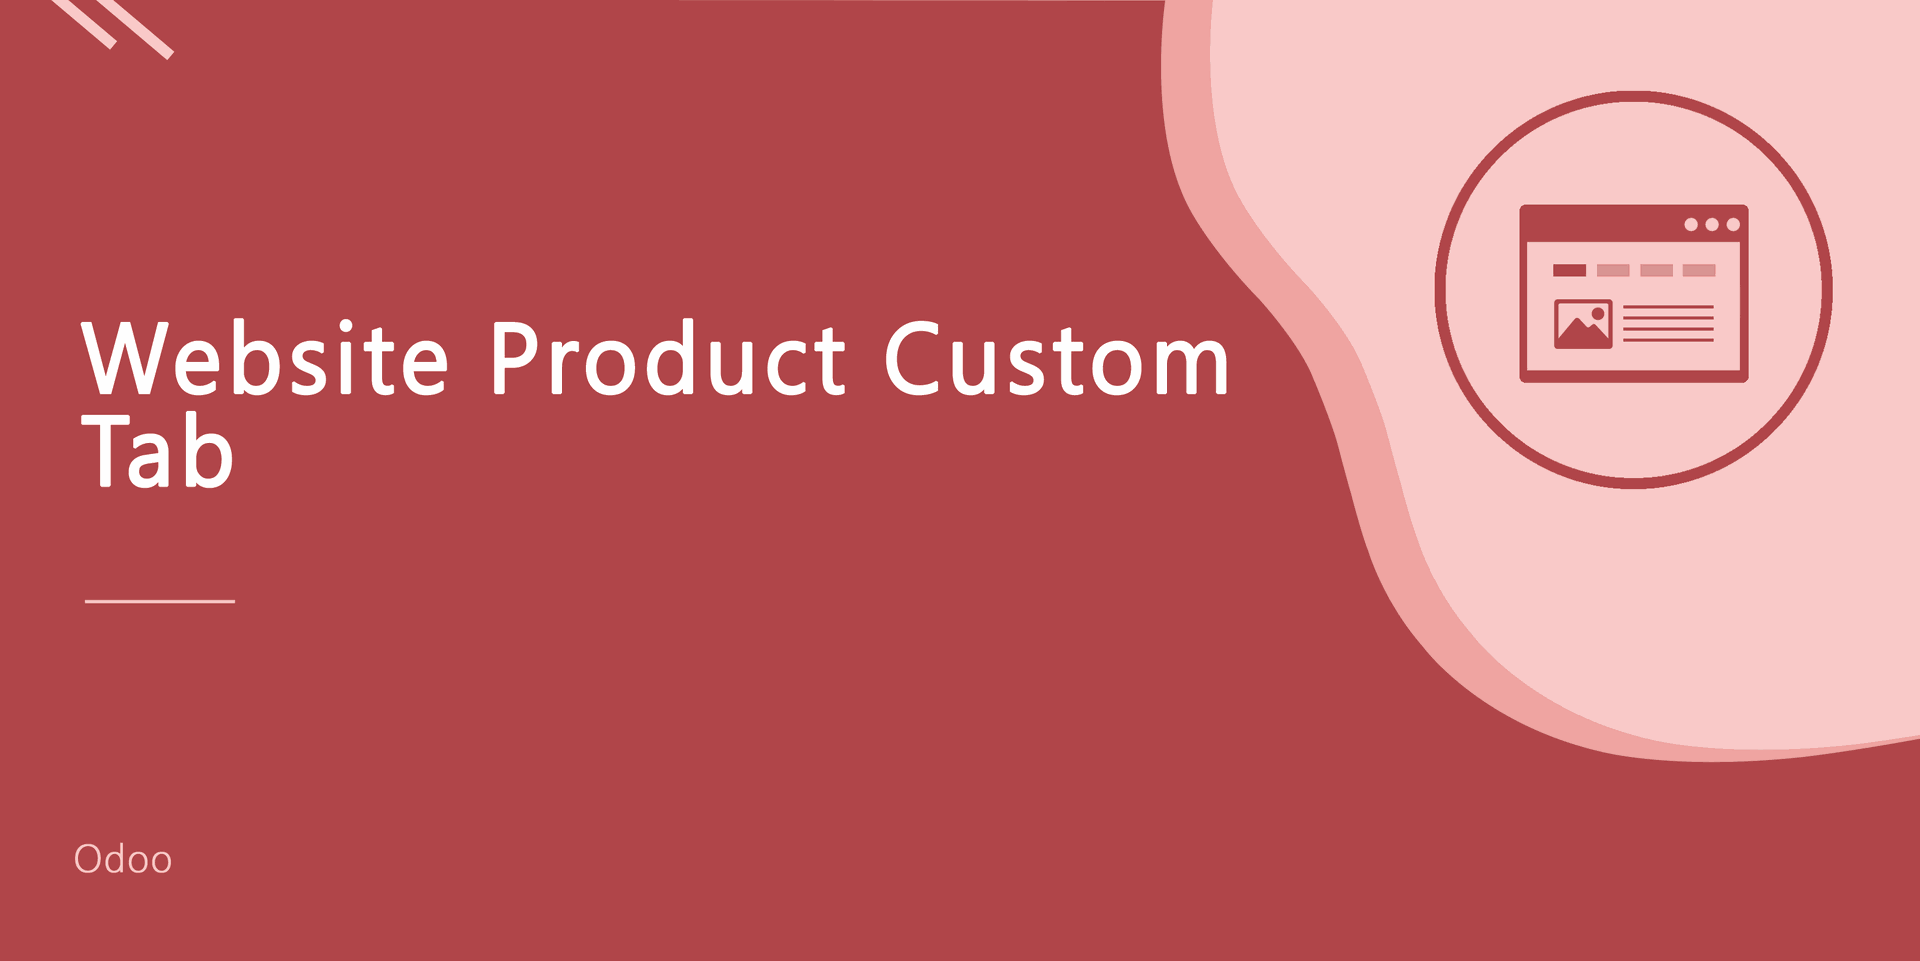 Website Product Custom Tab
